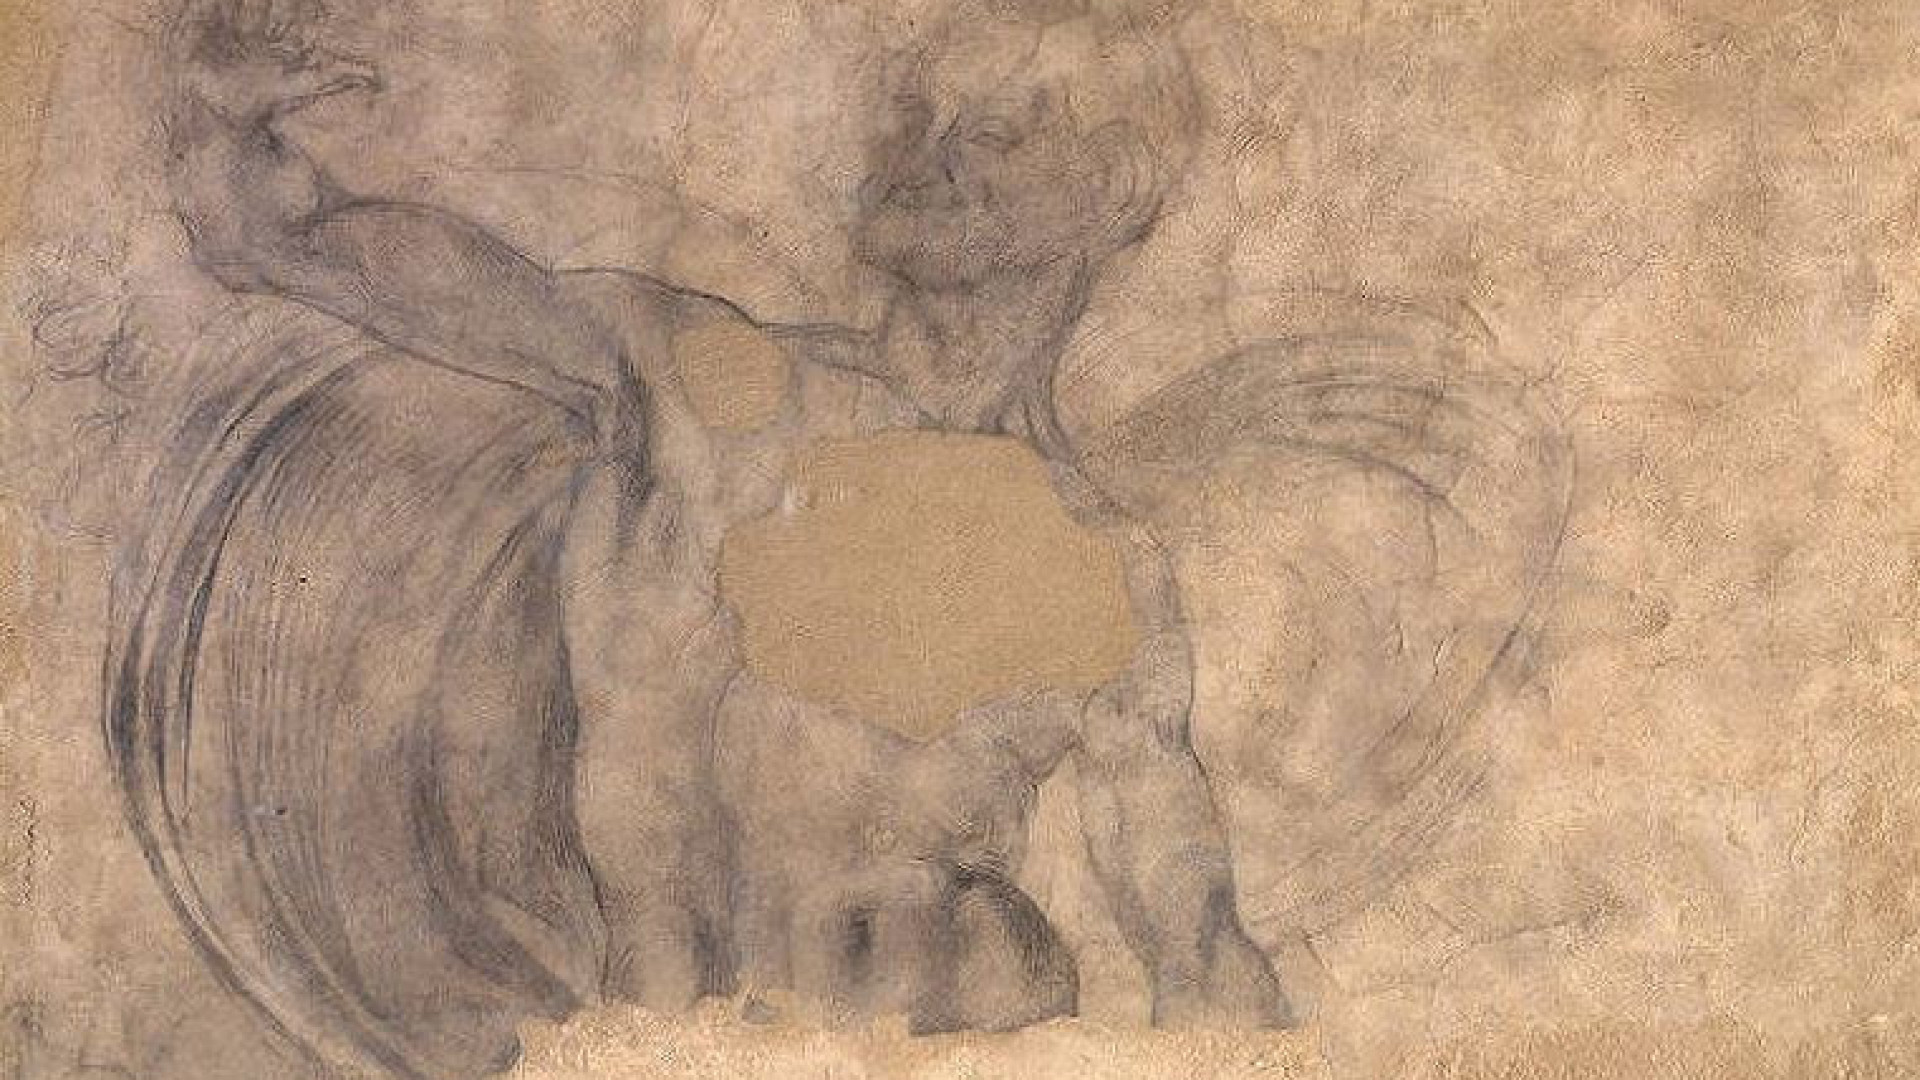 Suposta obra de Michelangelo é encontrada em uma casa na Itália